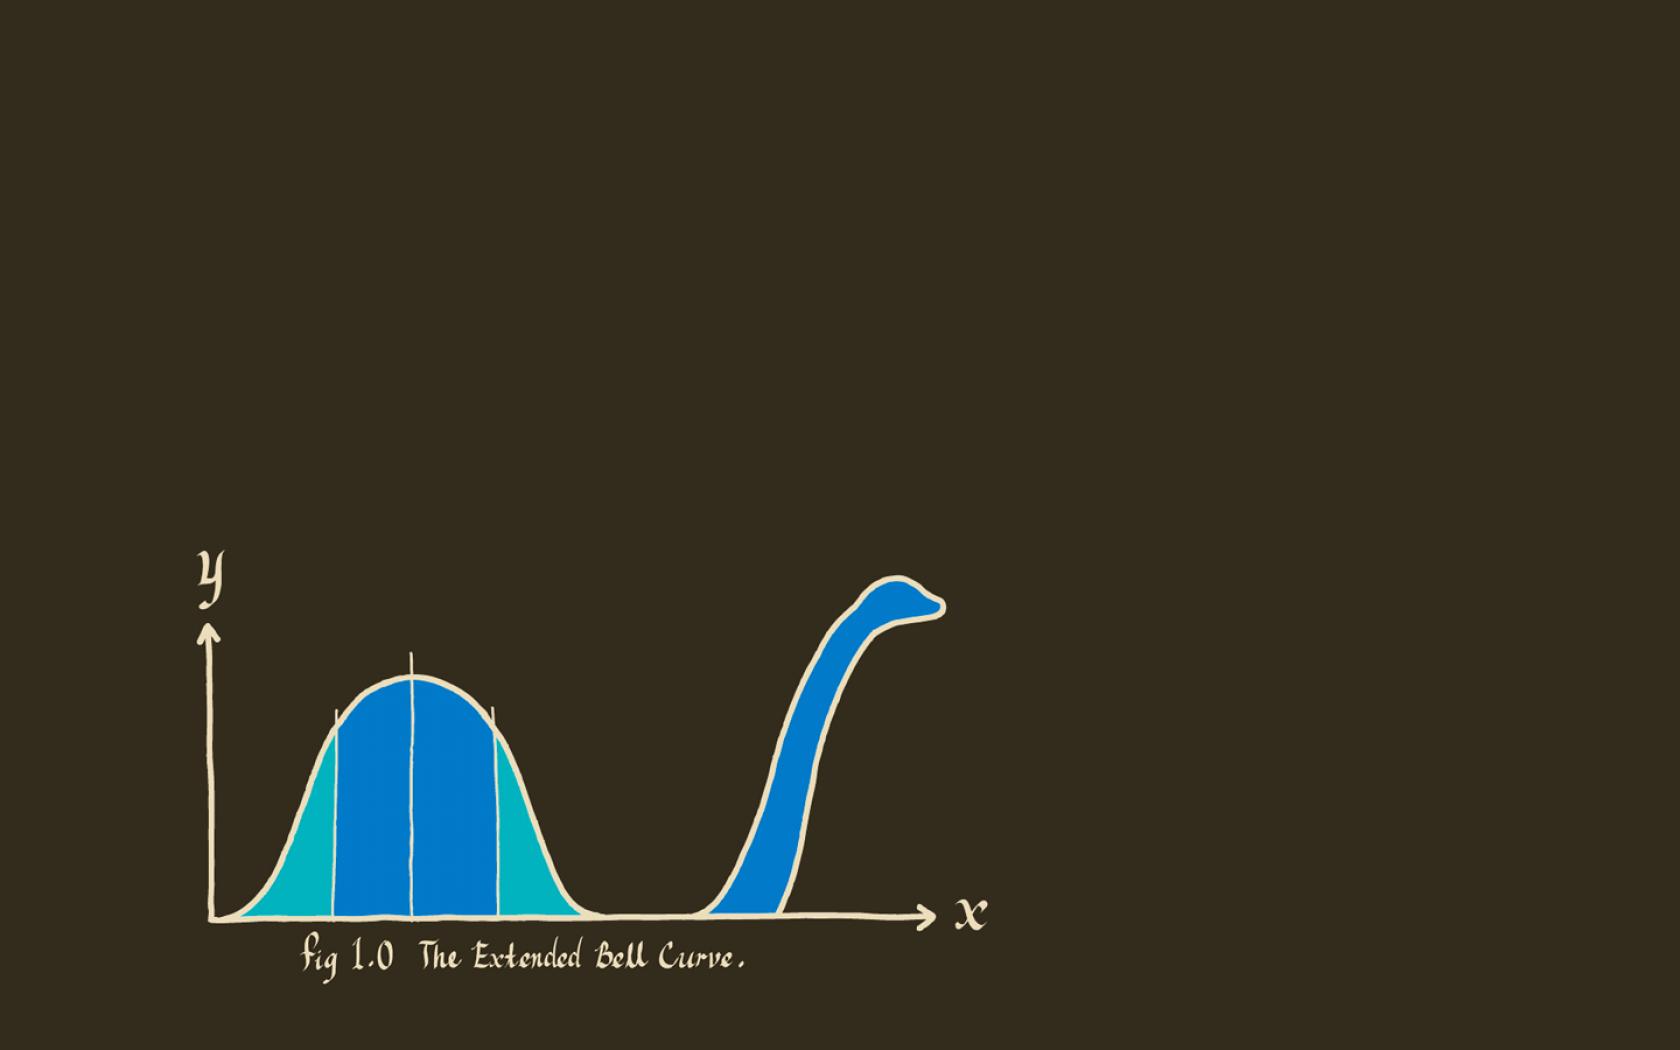 Graph Loch Ness Monster Statistics Qwno